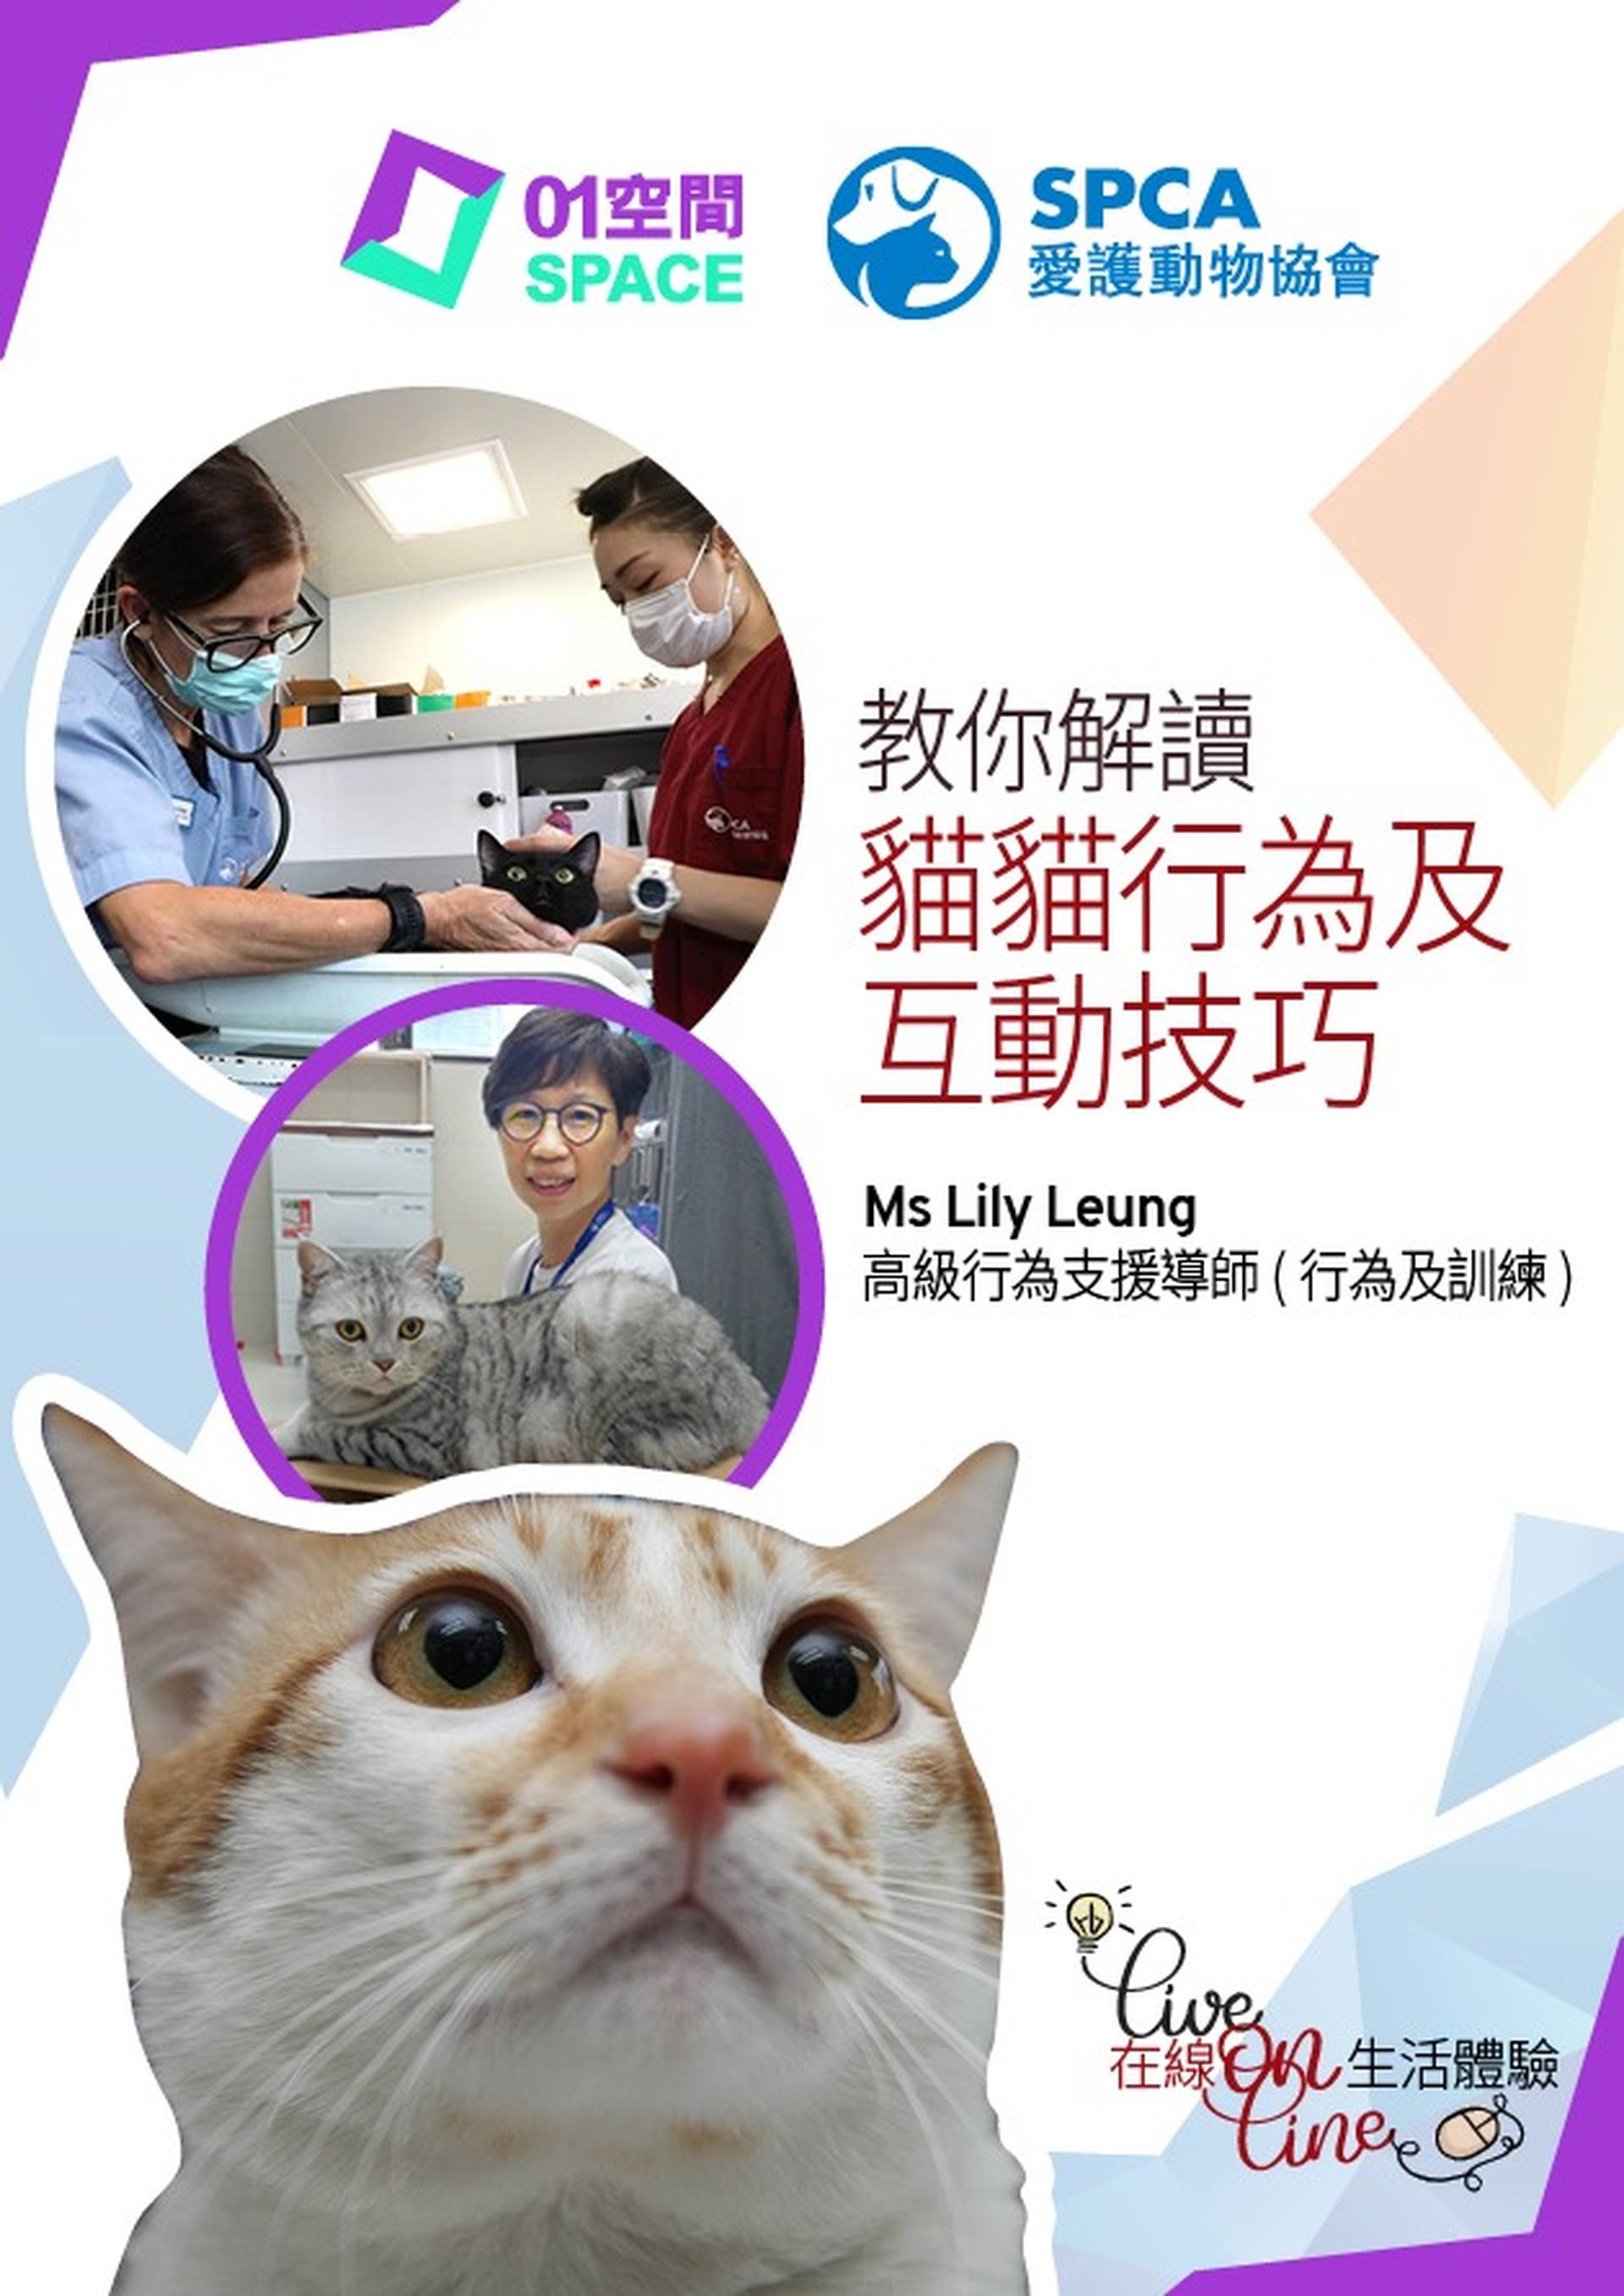 【重溫】01空間 X SPCA 教你解讀貓貓行為及互動技巧